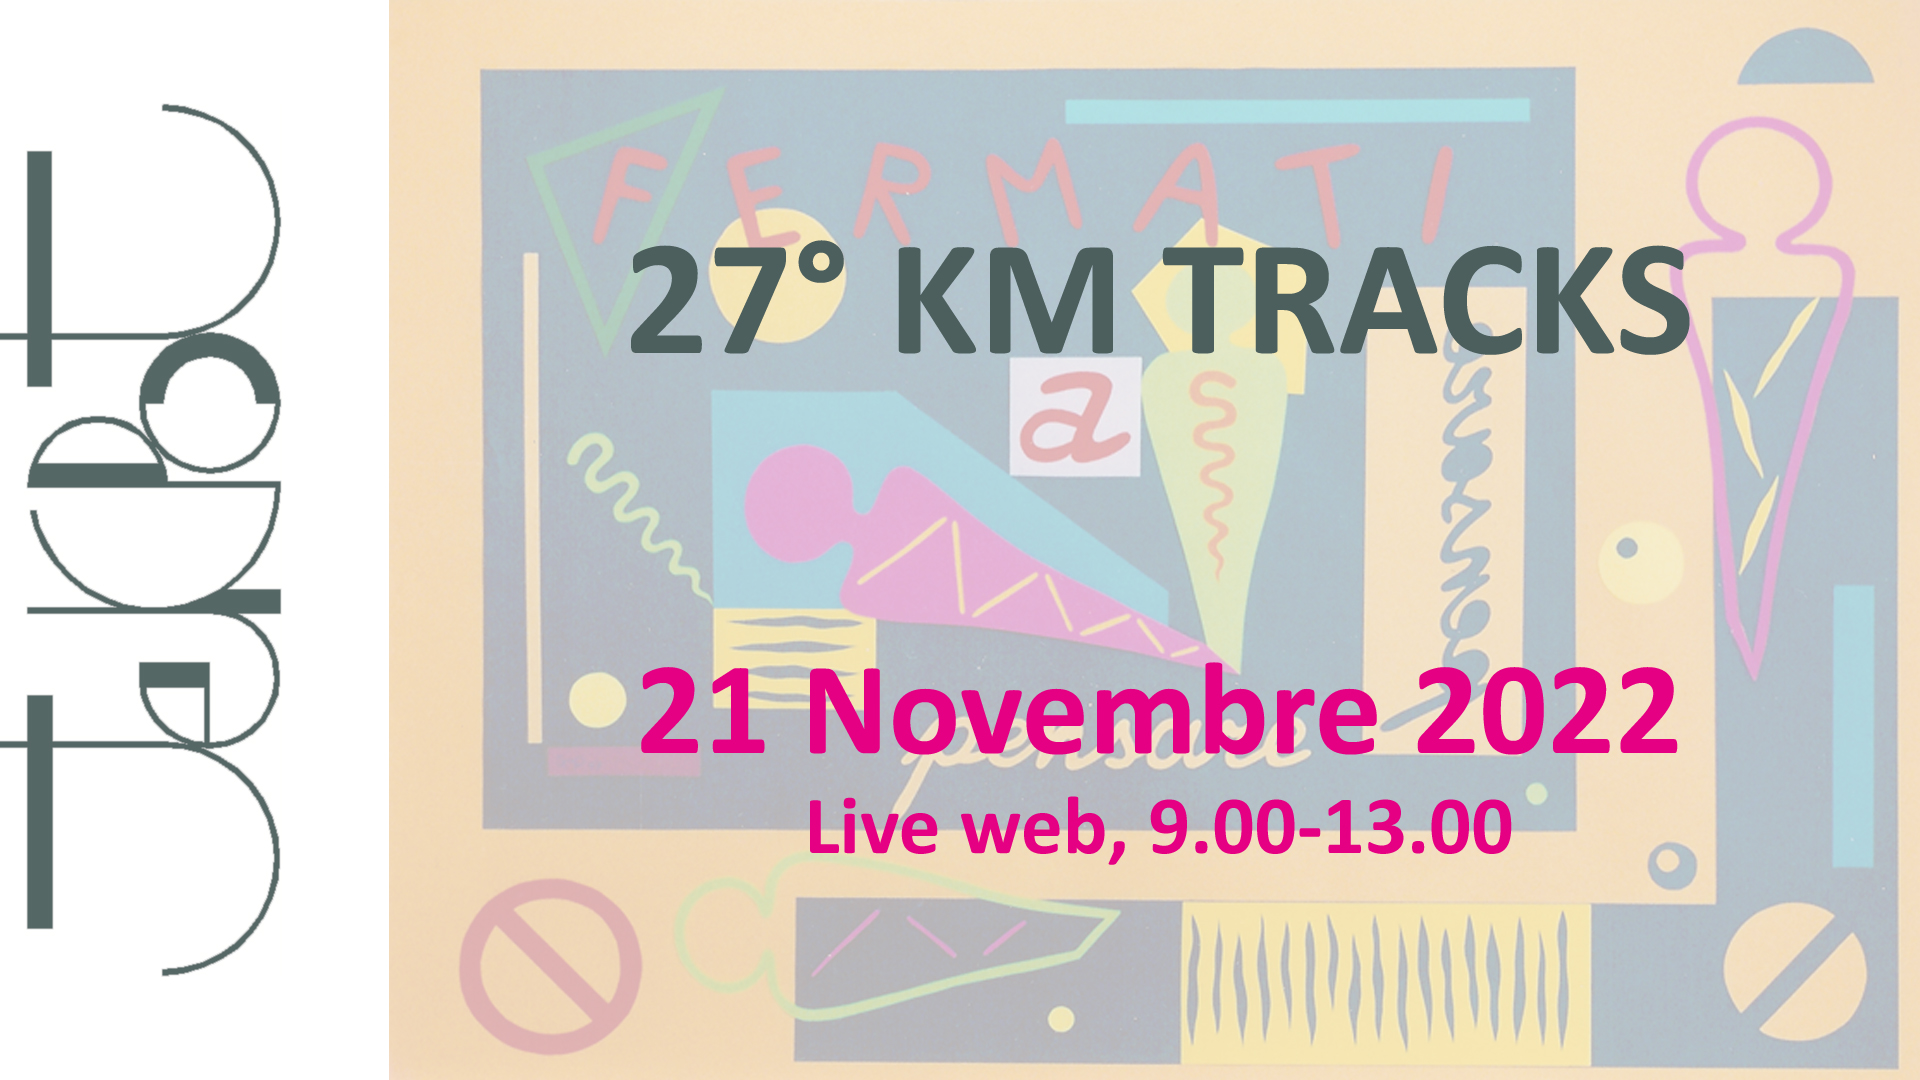 Patrocinio e partecipazione AIPSI al 27° KM TRACKS del 21/11/2022 live web ore 9-13